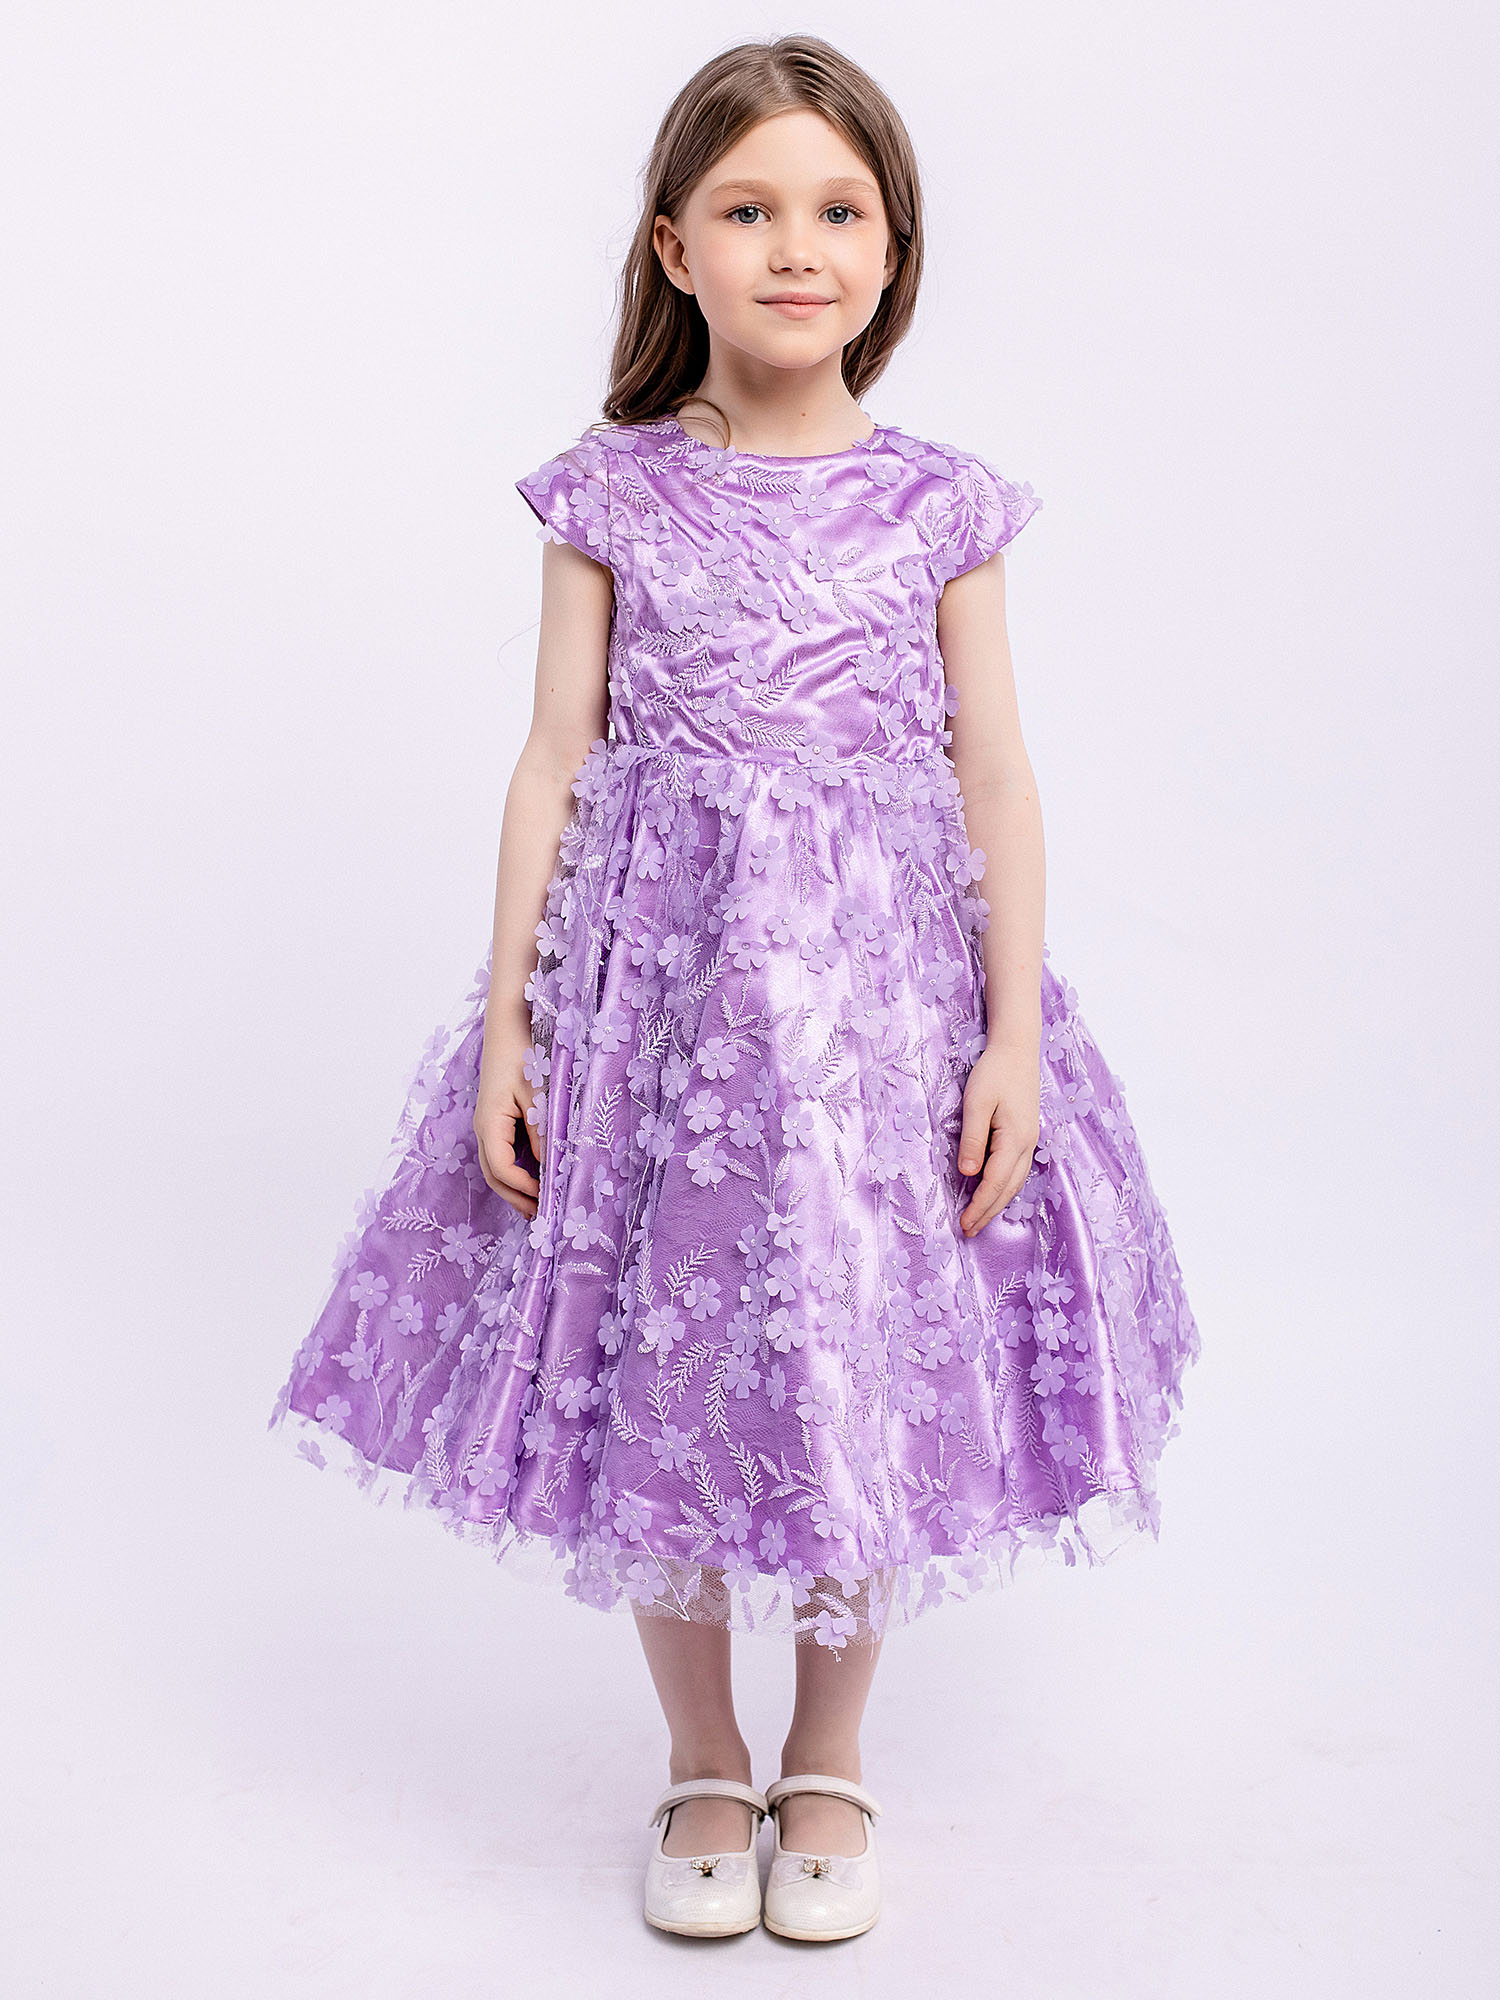 Платье детское Batik 025 п23, сиреневый цветы, 98